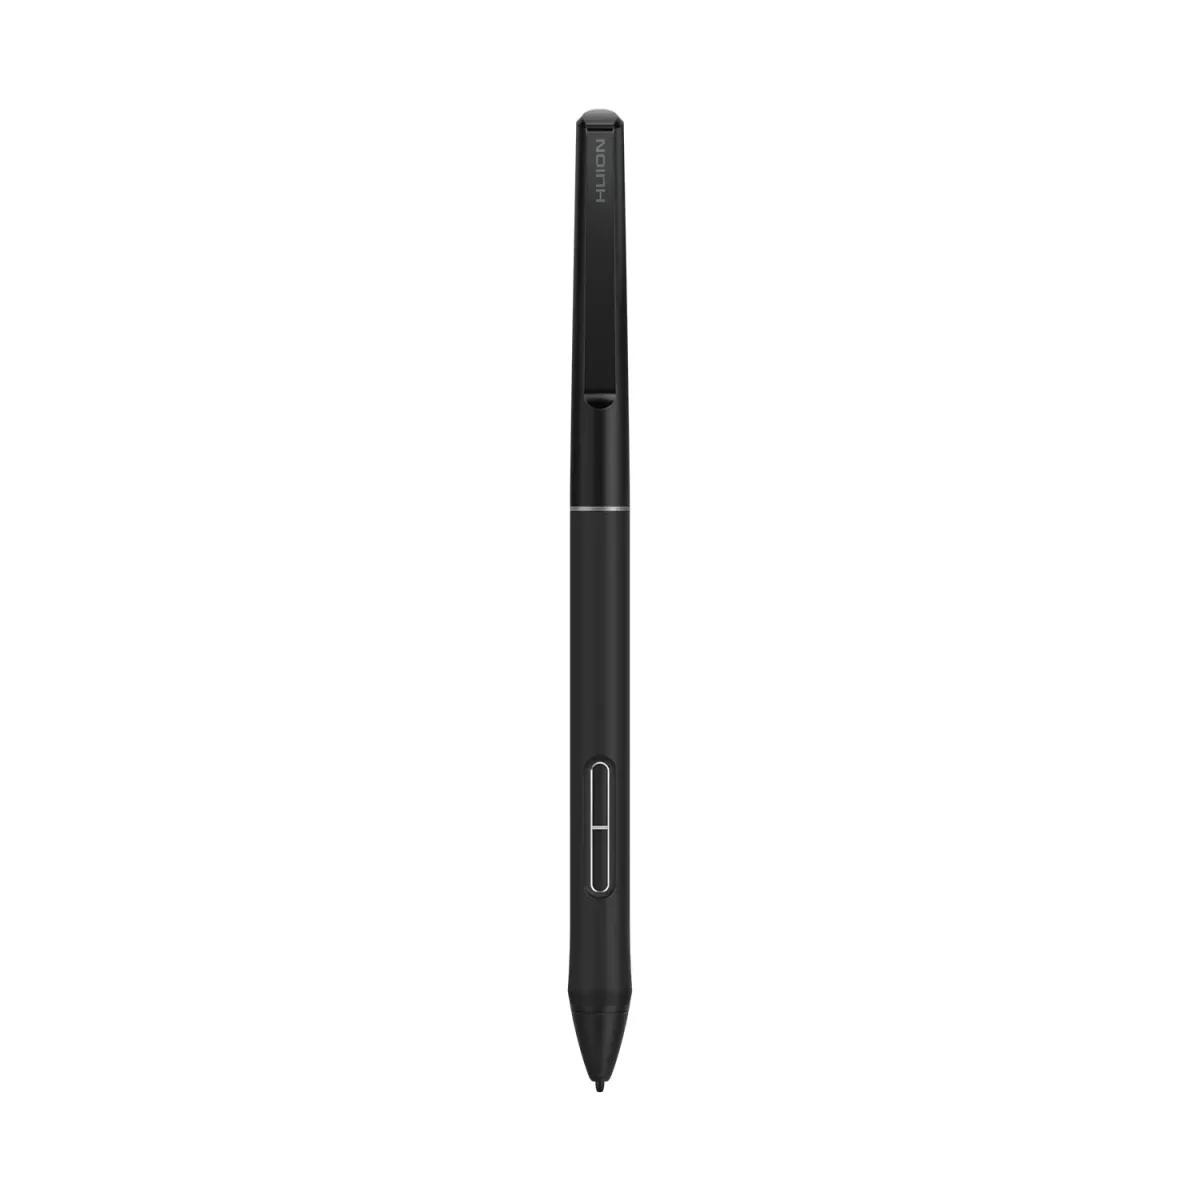 Huion - Batterijloze slanke pen PW550S